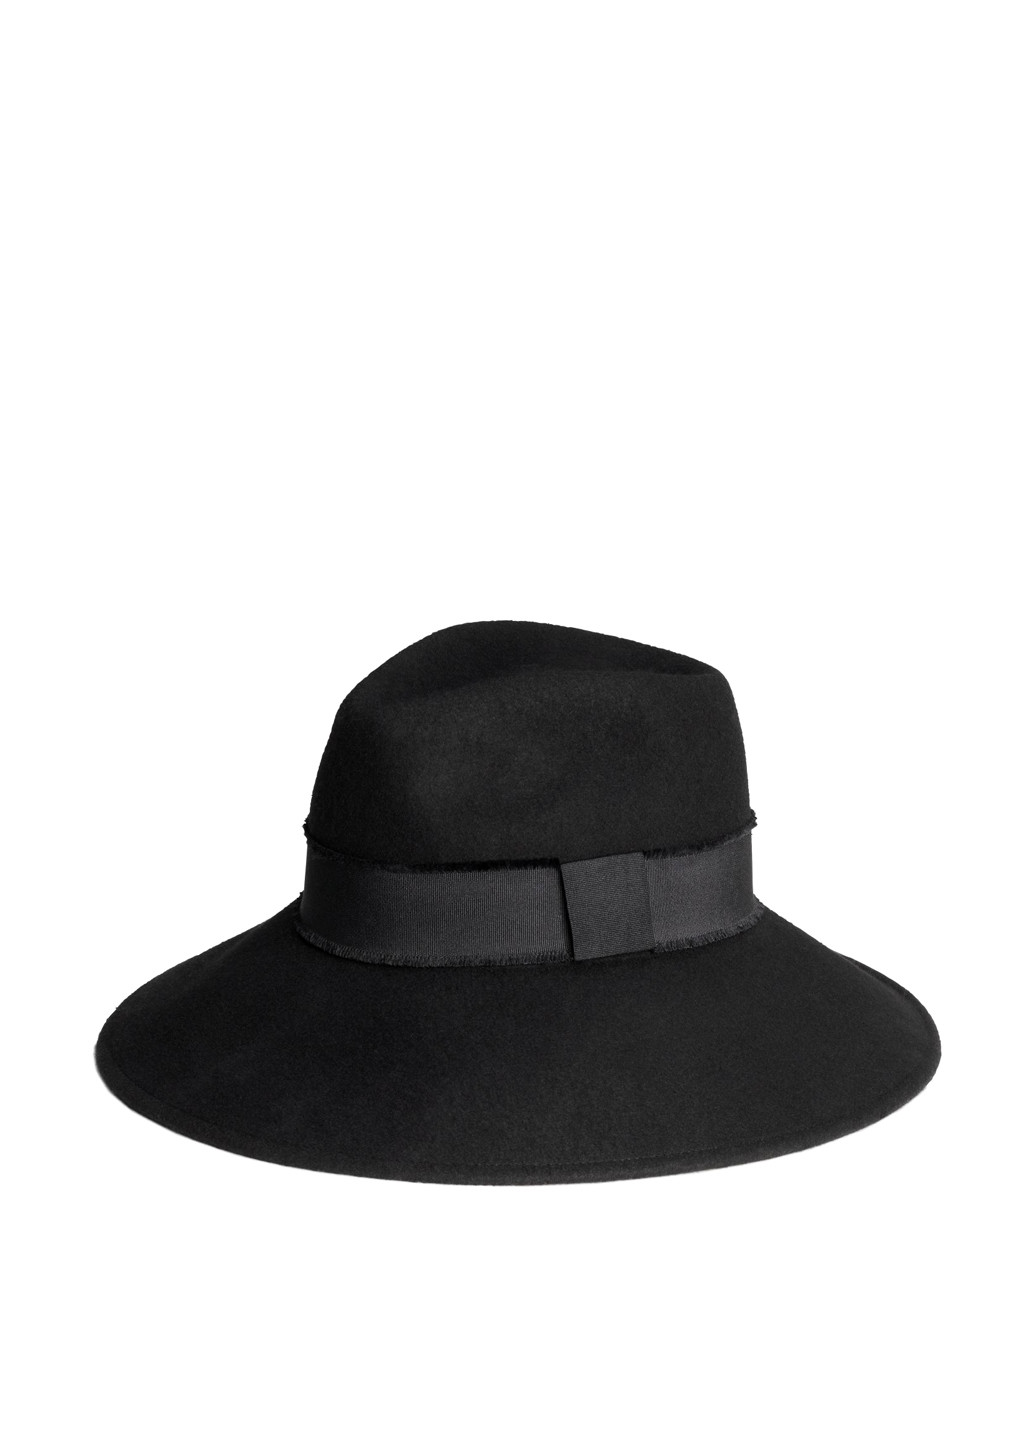 Шляпа H&M чёрная кэжуал шерсть